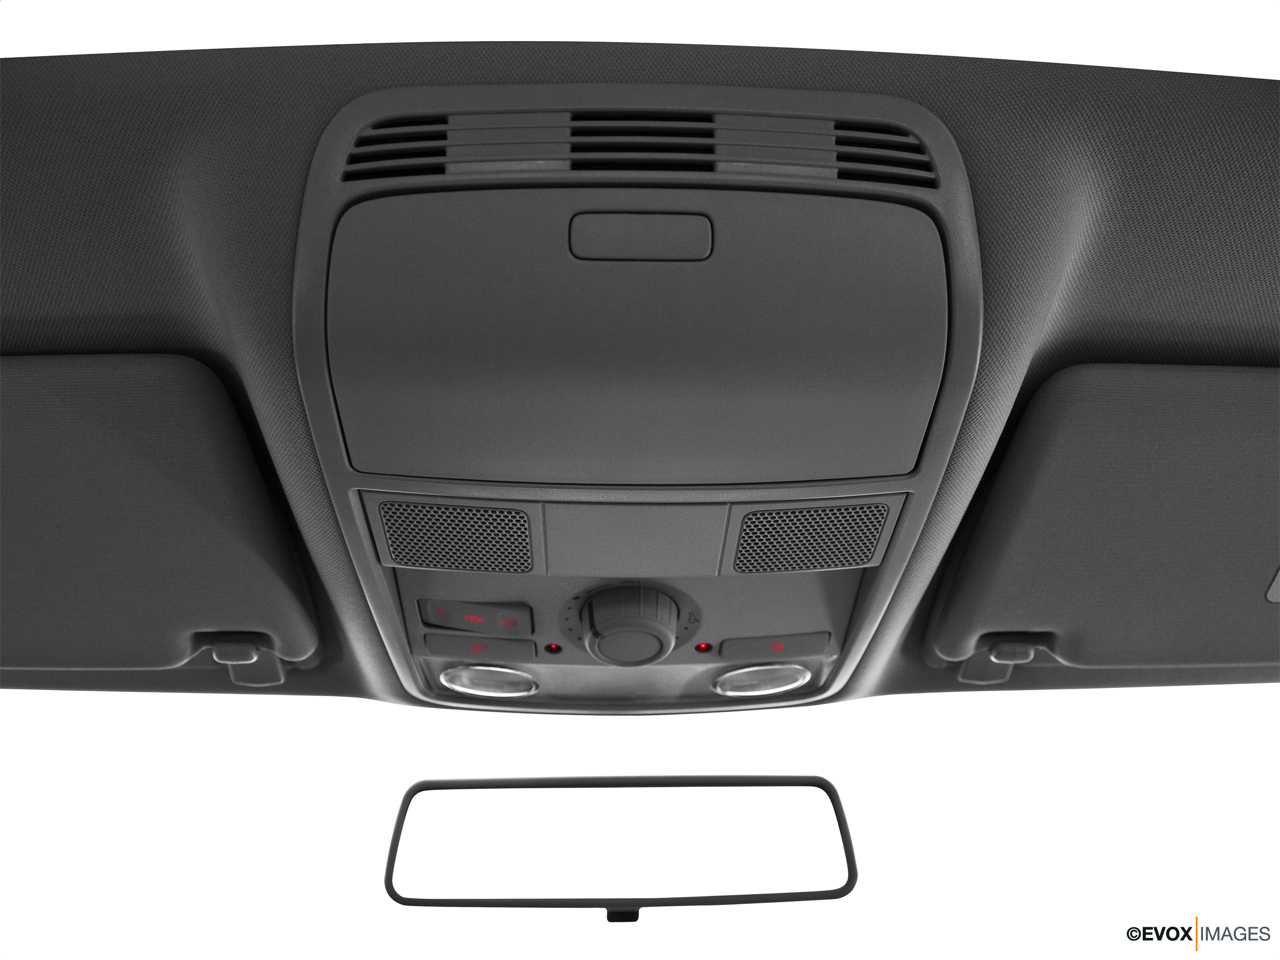 2010 Volkswagen Passat Komfort Courtesy lamps/ceiling controls. 